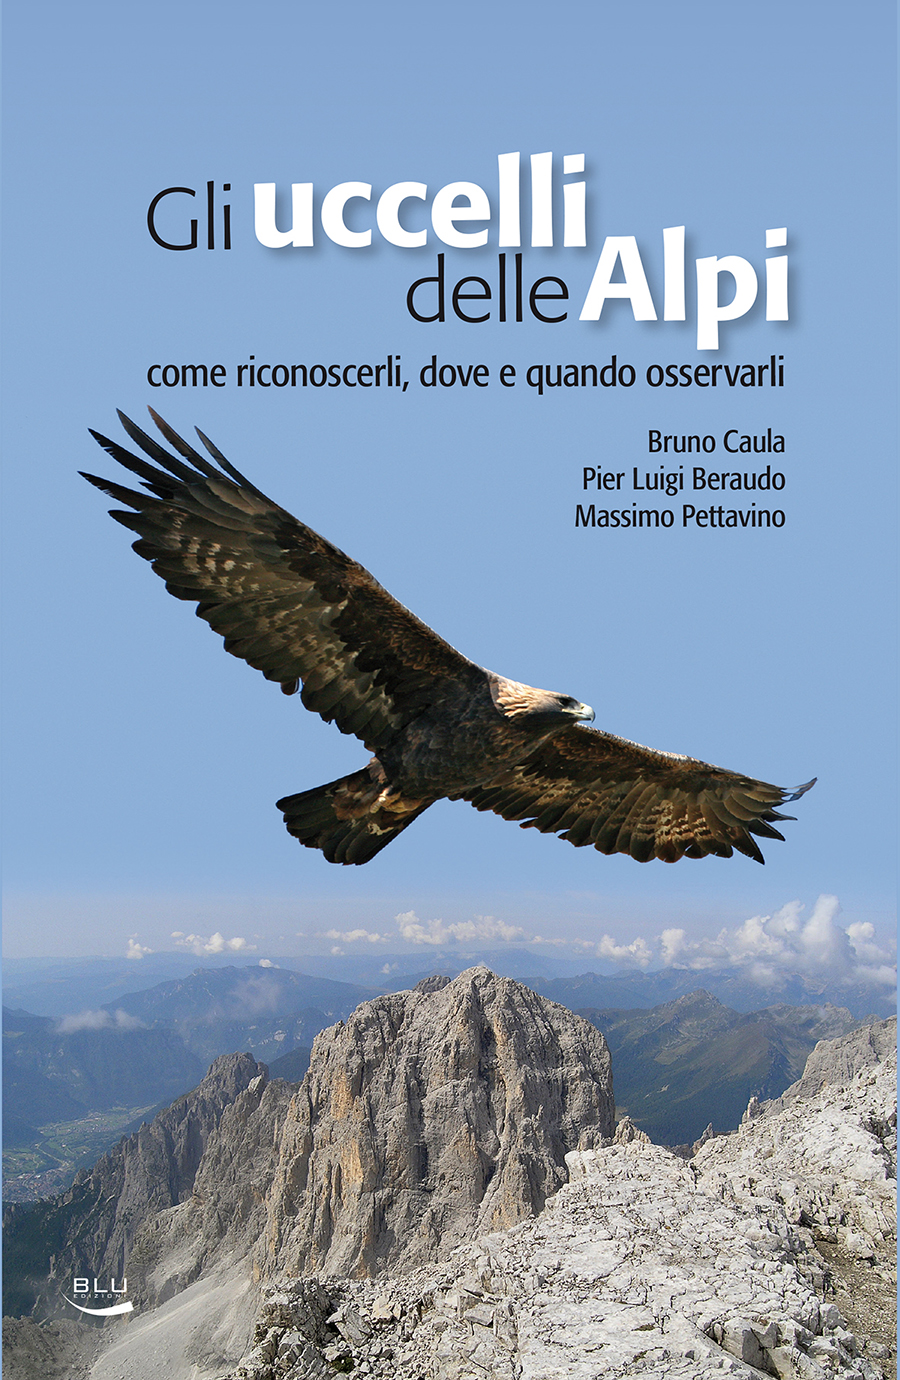 Gli uccelli delle Alpi, Blu Edizioni